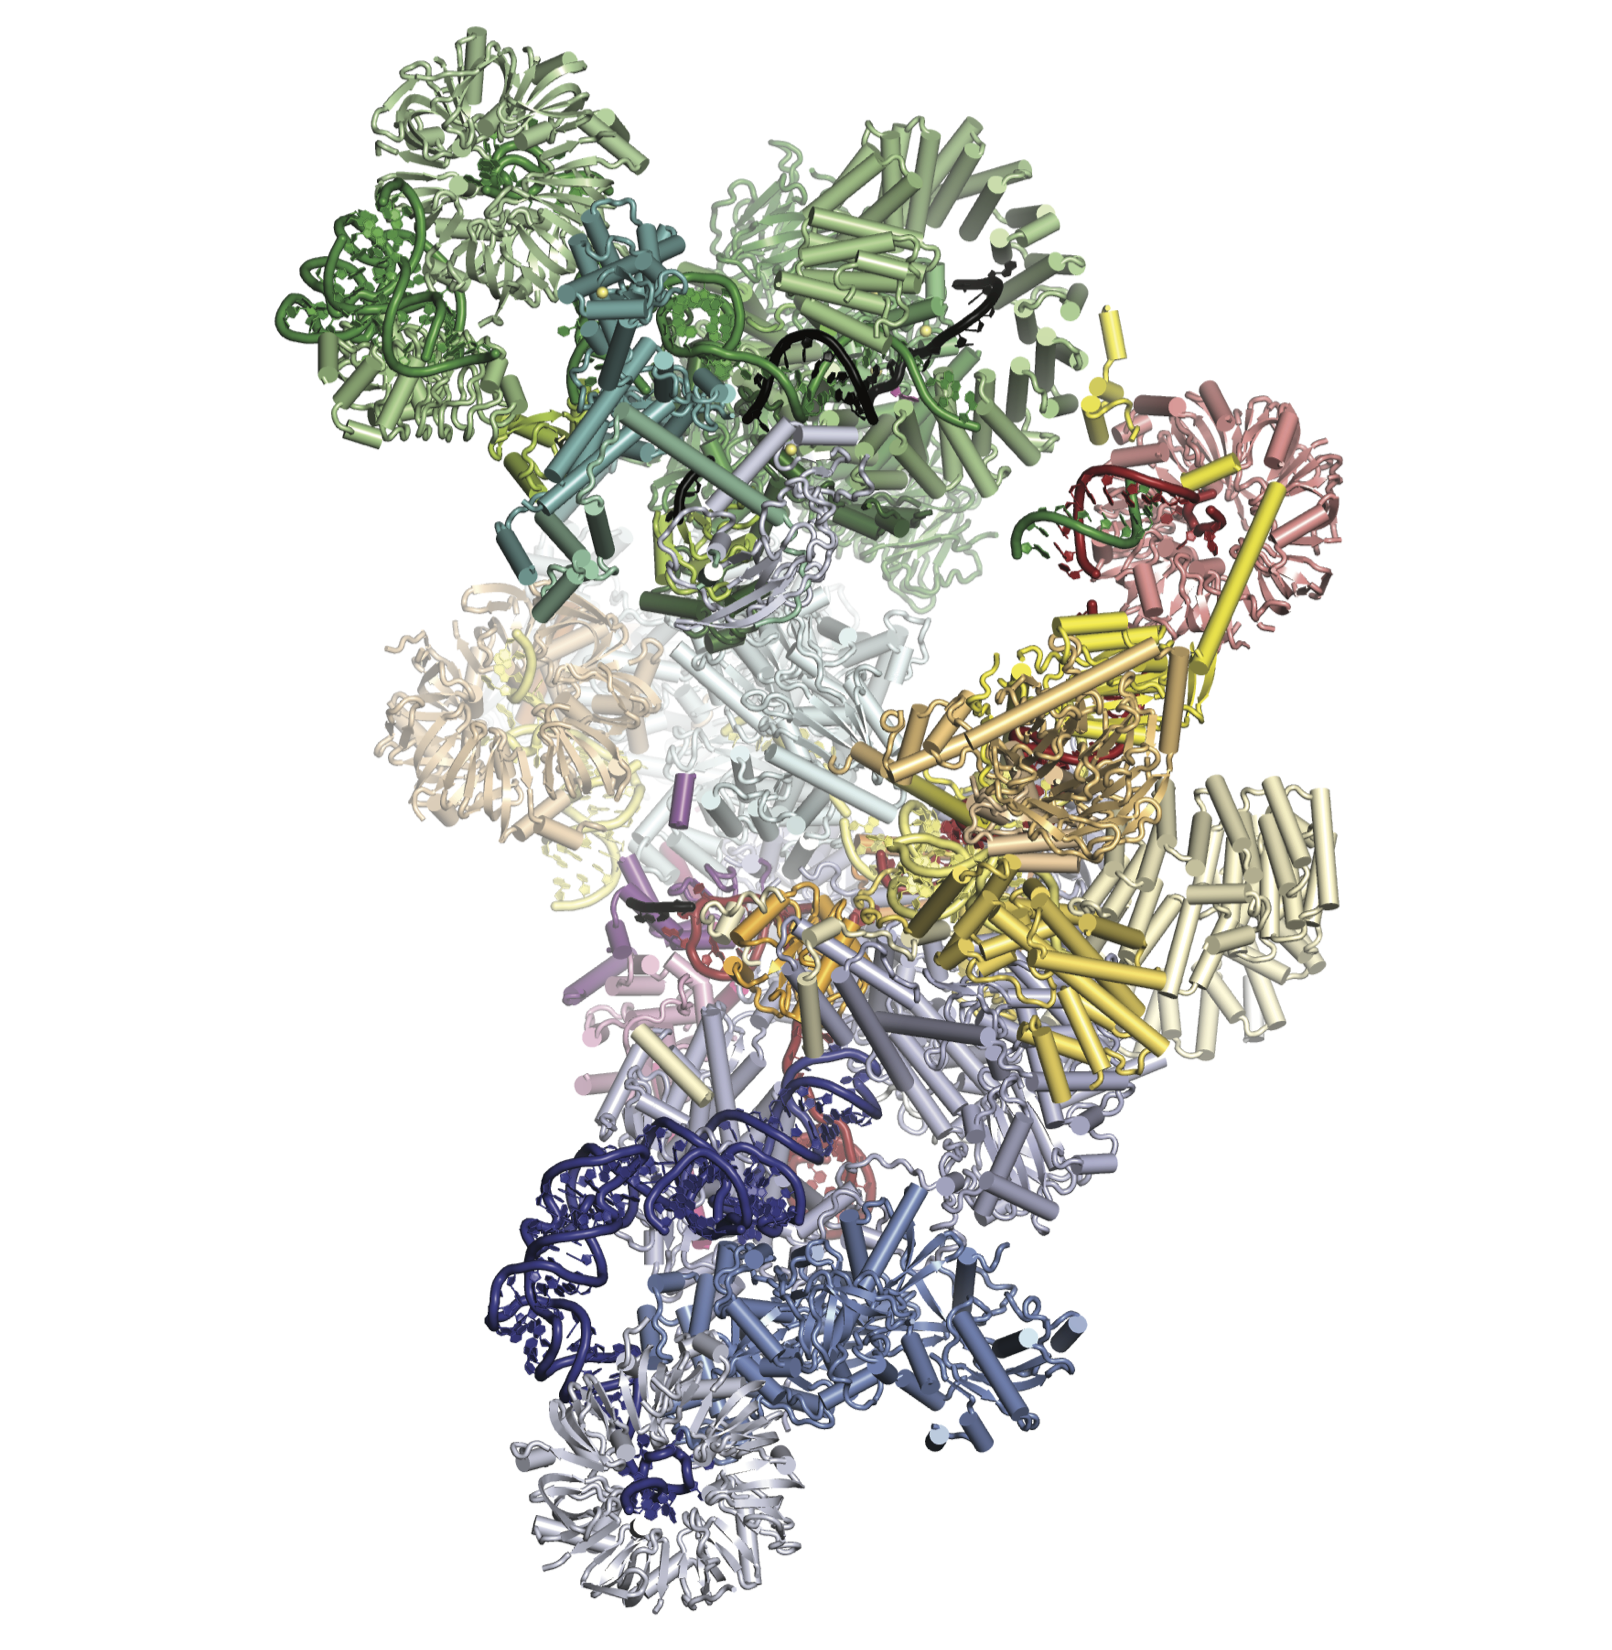 Pre-catalytic spliceosome